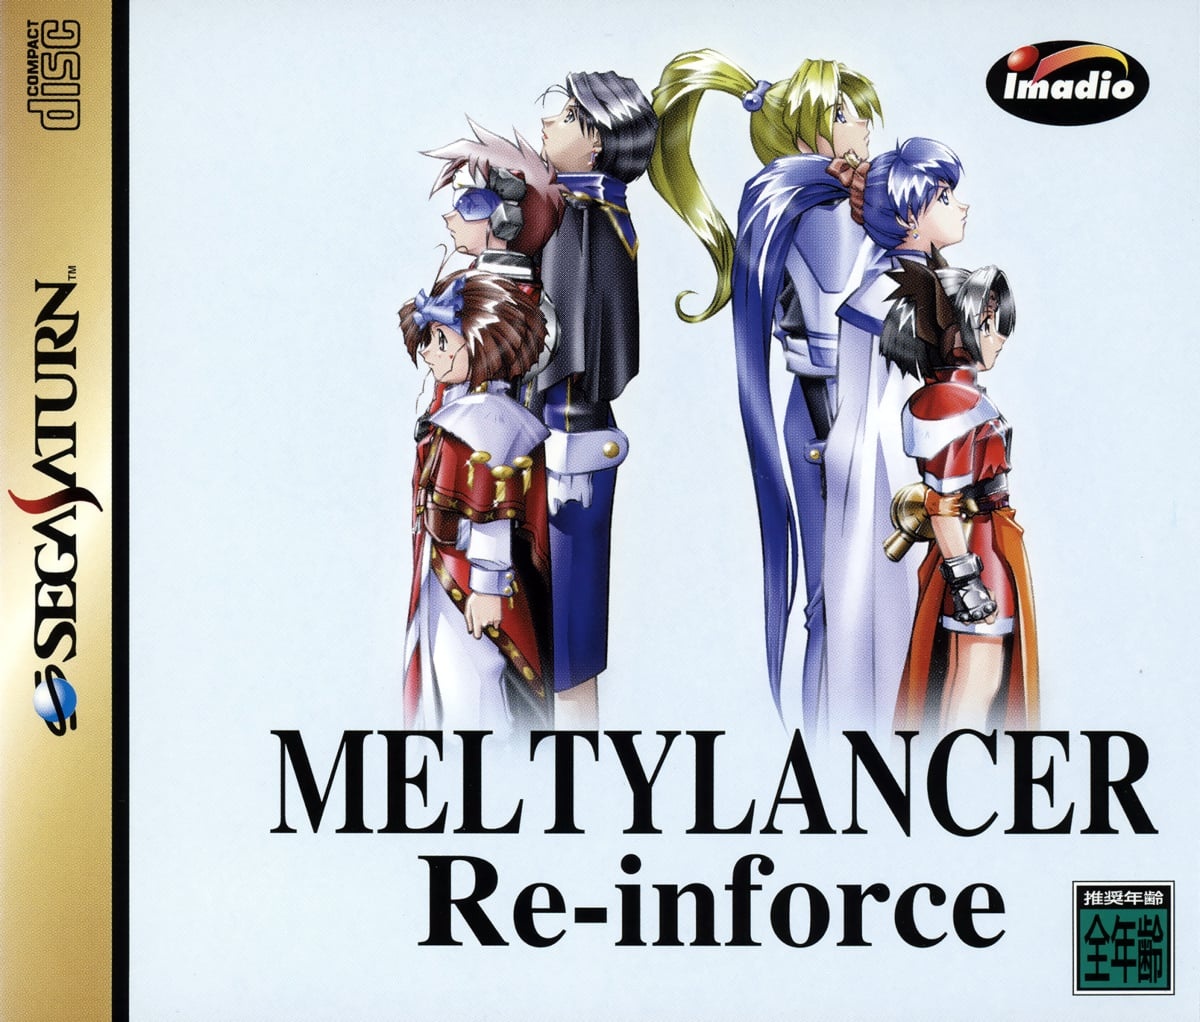 Capa do jogo MeltyLancer Re-inforce